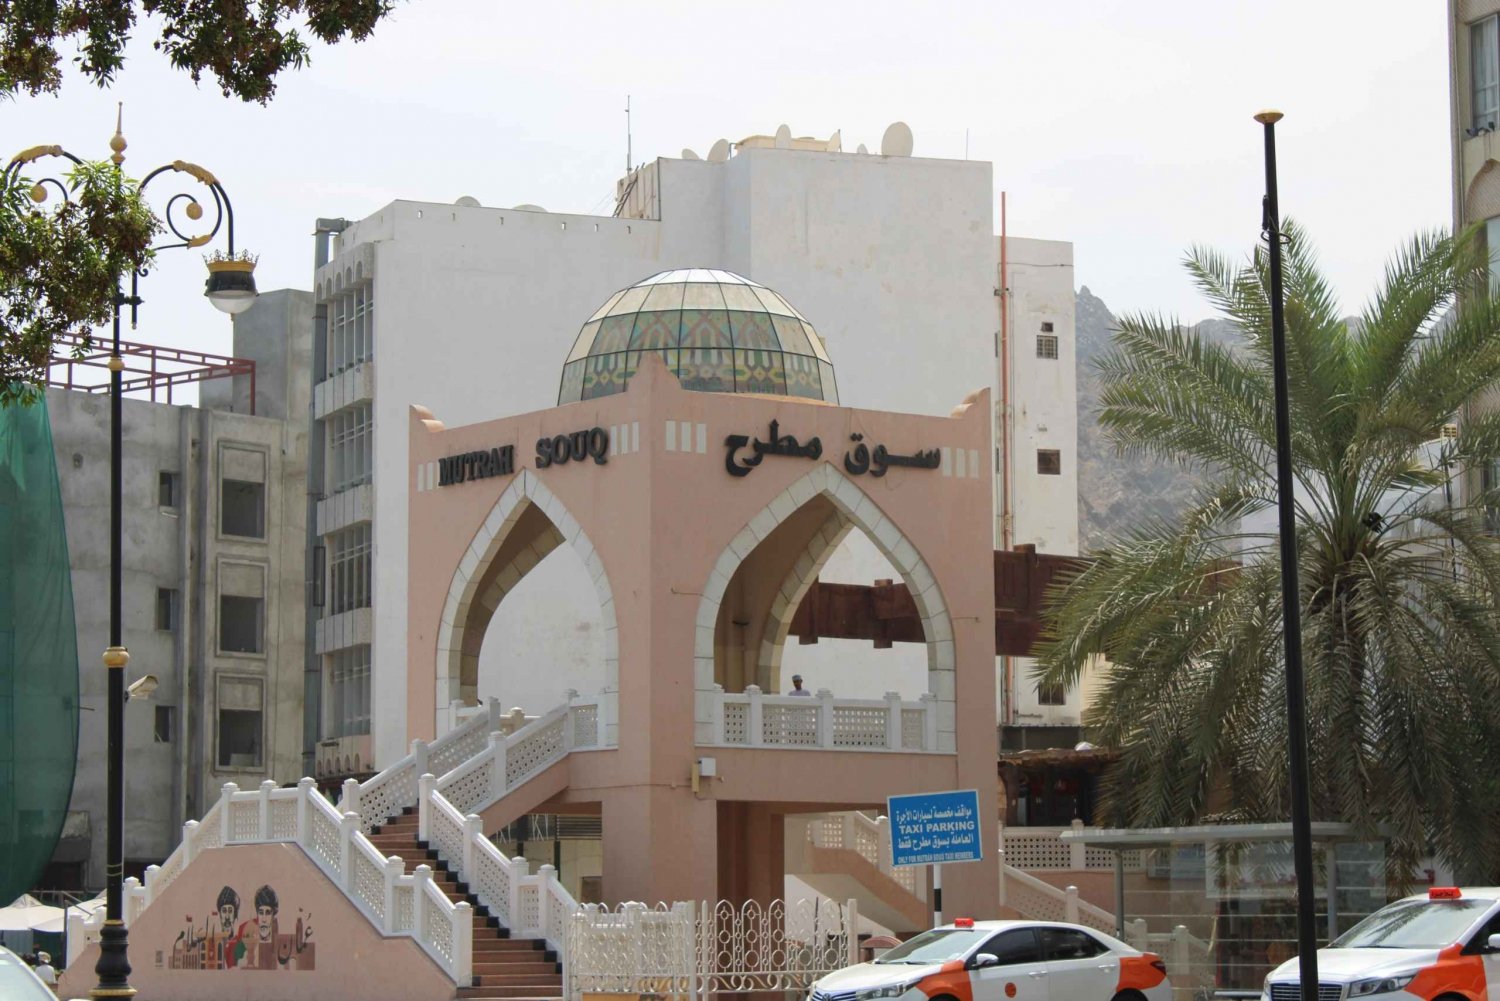 Muscat: Halvdagstur till stora moskén, souken och operahuset